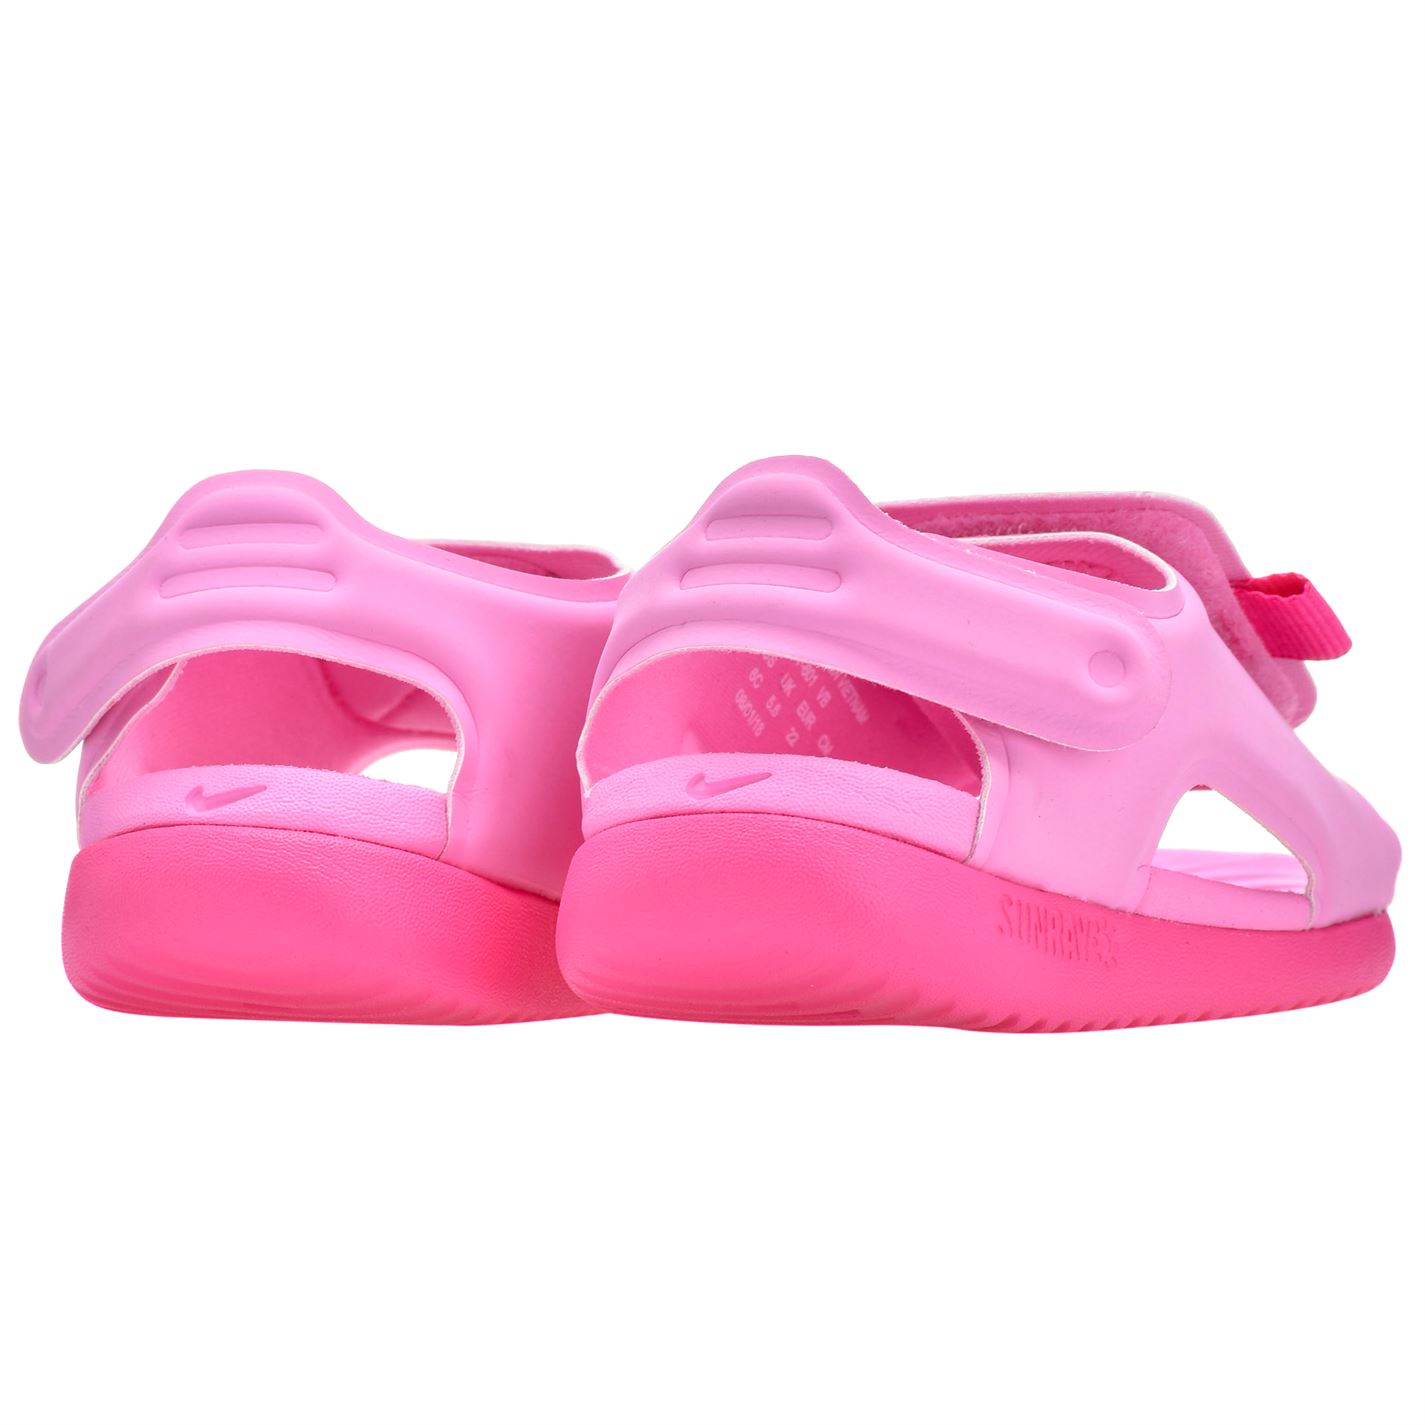 Sandale Nike Sunray Adjust 5 / pentru Bebelusi pentru Bebelusi roz fucsia